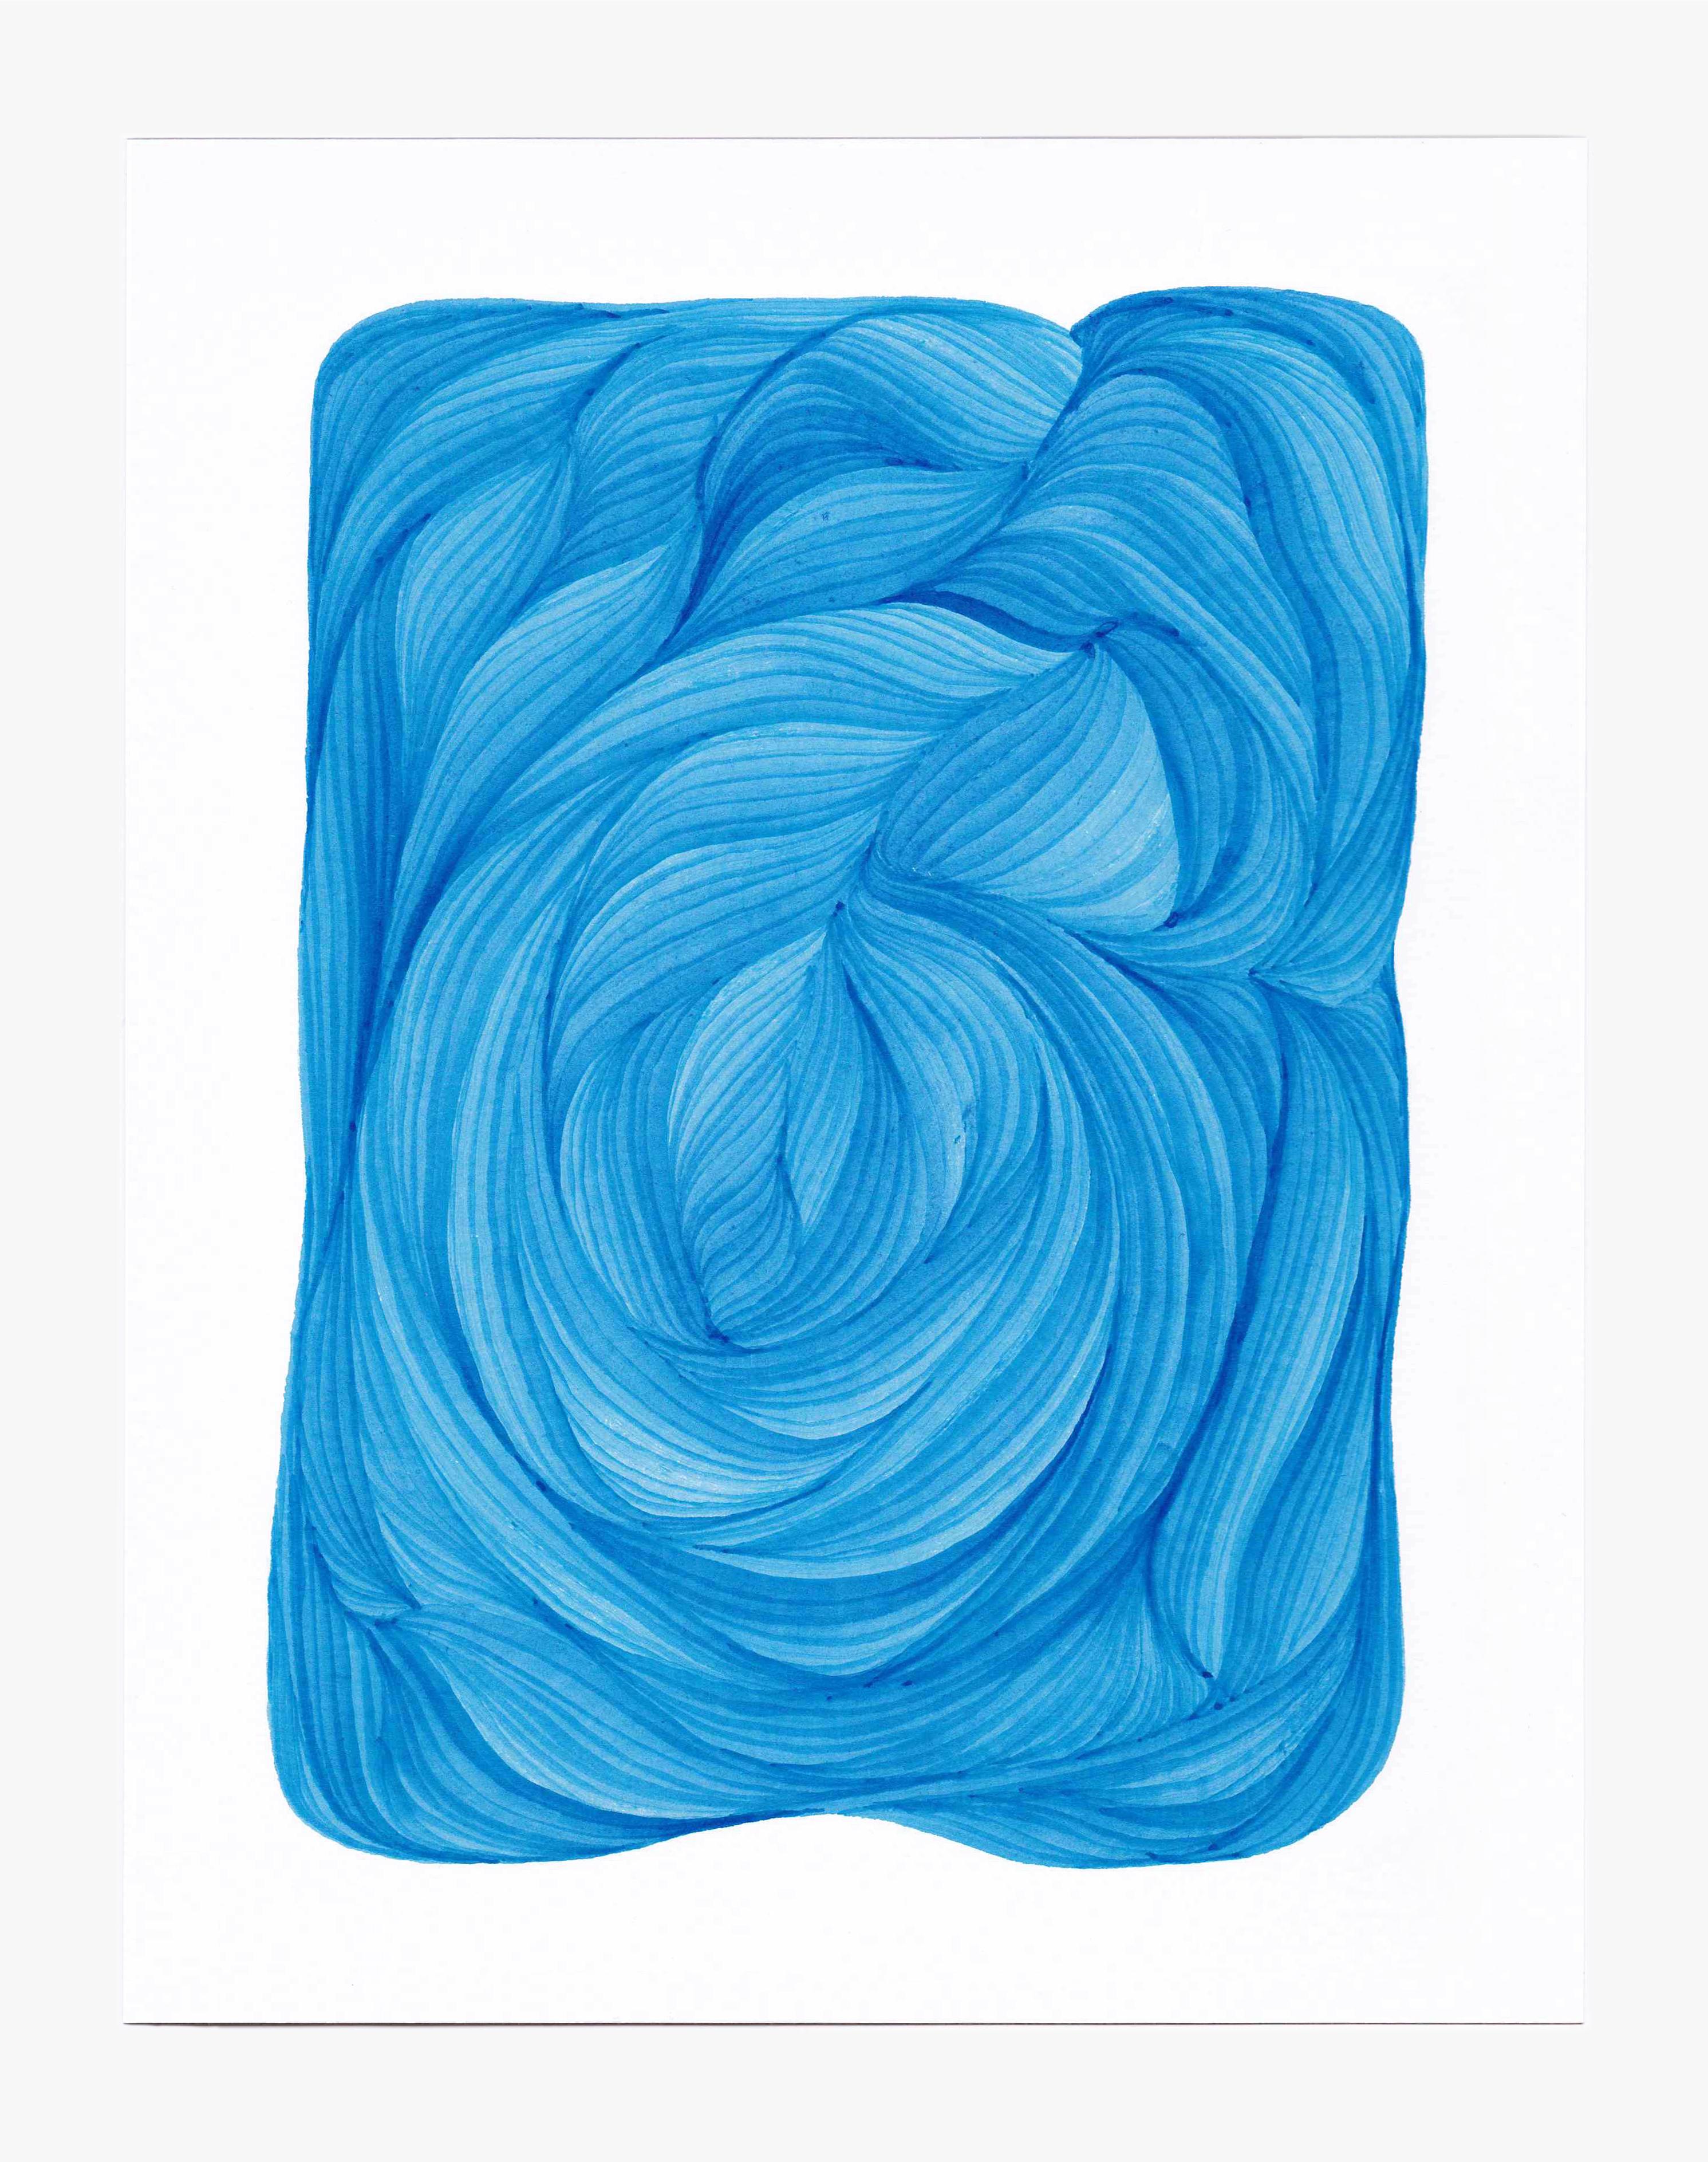 Dana Piazza Abstract Drawing – Linien 4 - Abstrakte geometrische leuchtend blaue Tuschezeichnung auf Papier